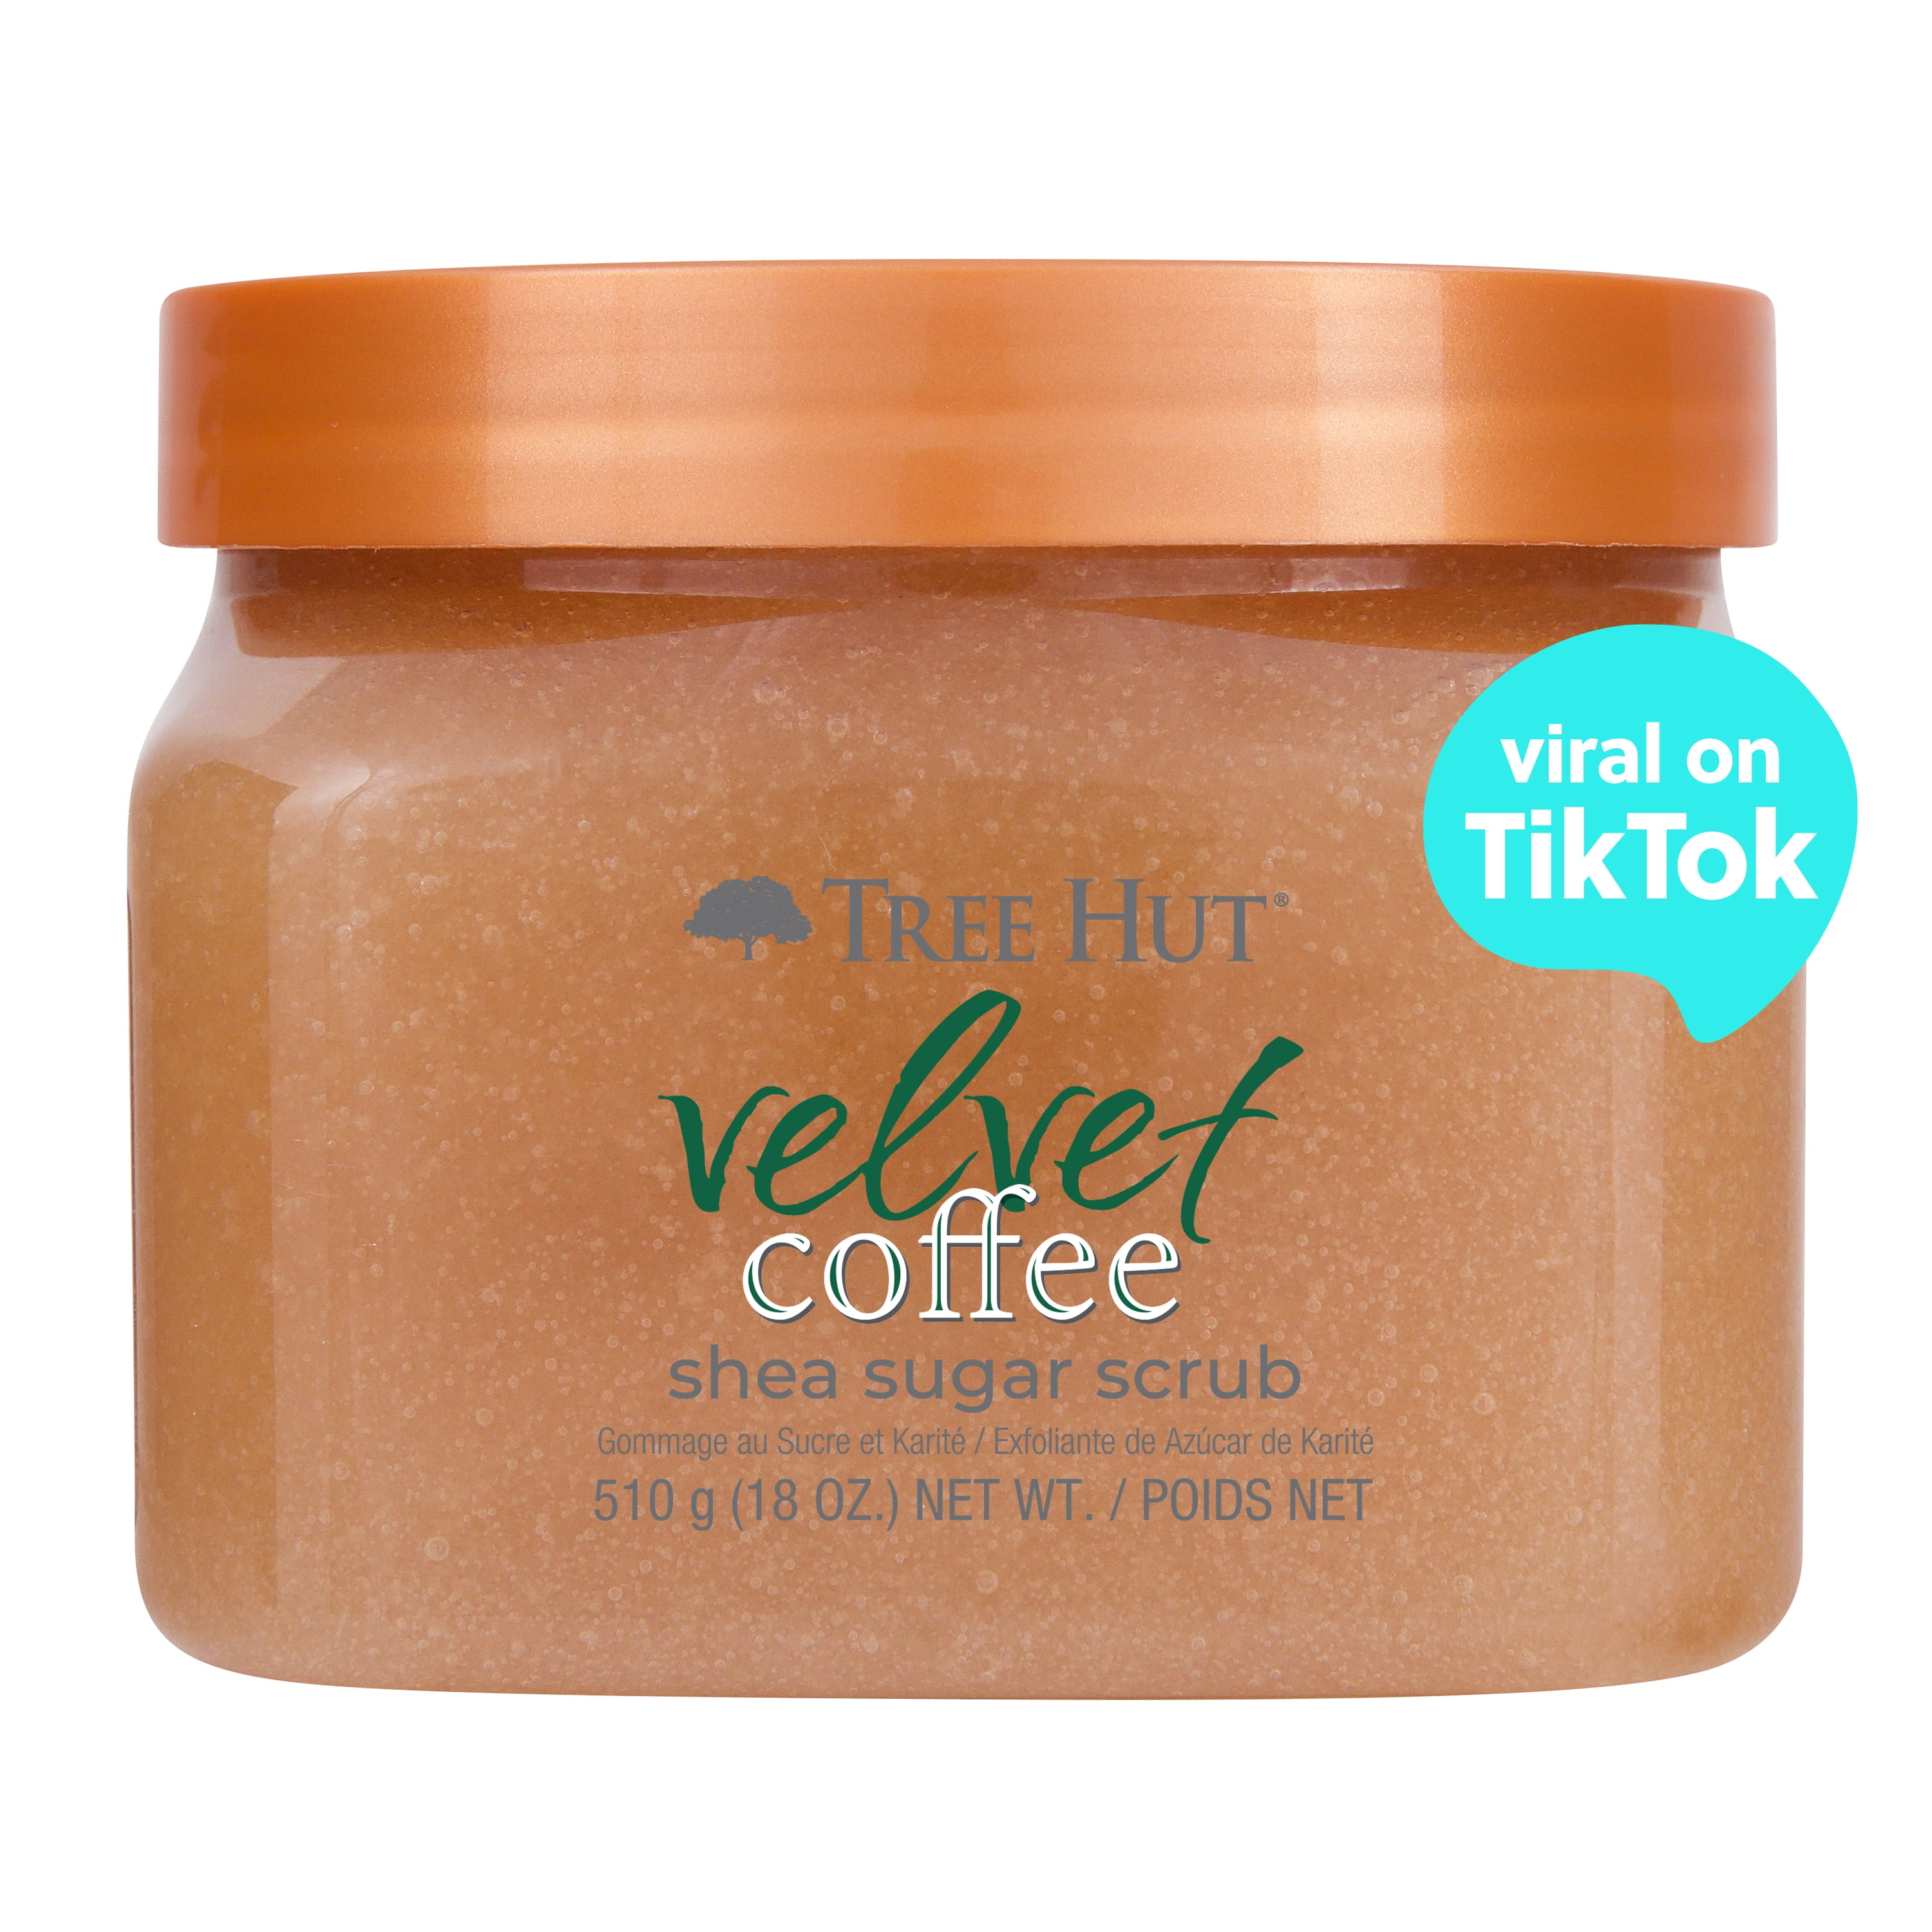 Tree Hut Shea Sugar Exfoliating Body Scrub Velvet Coffee, 18 oz pic